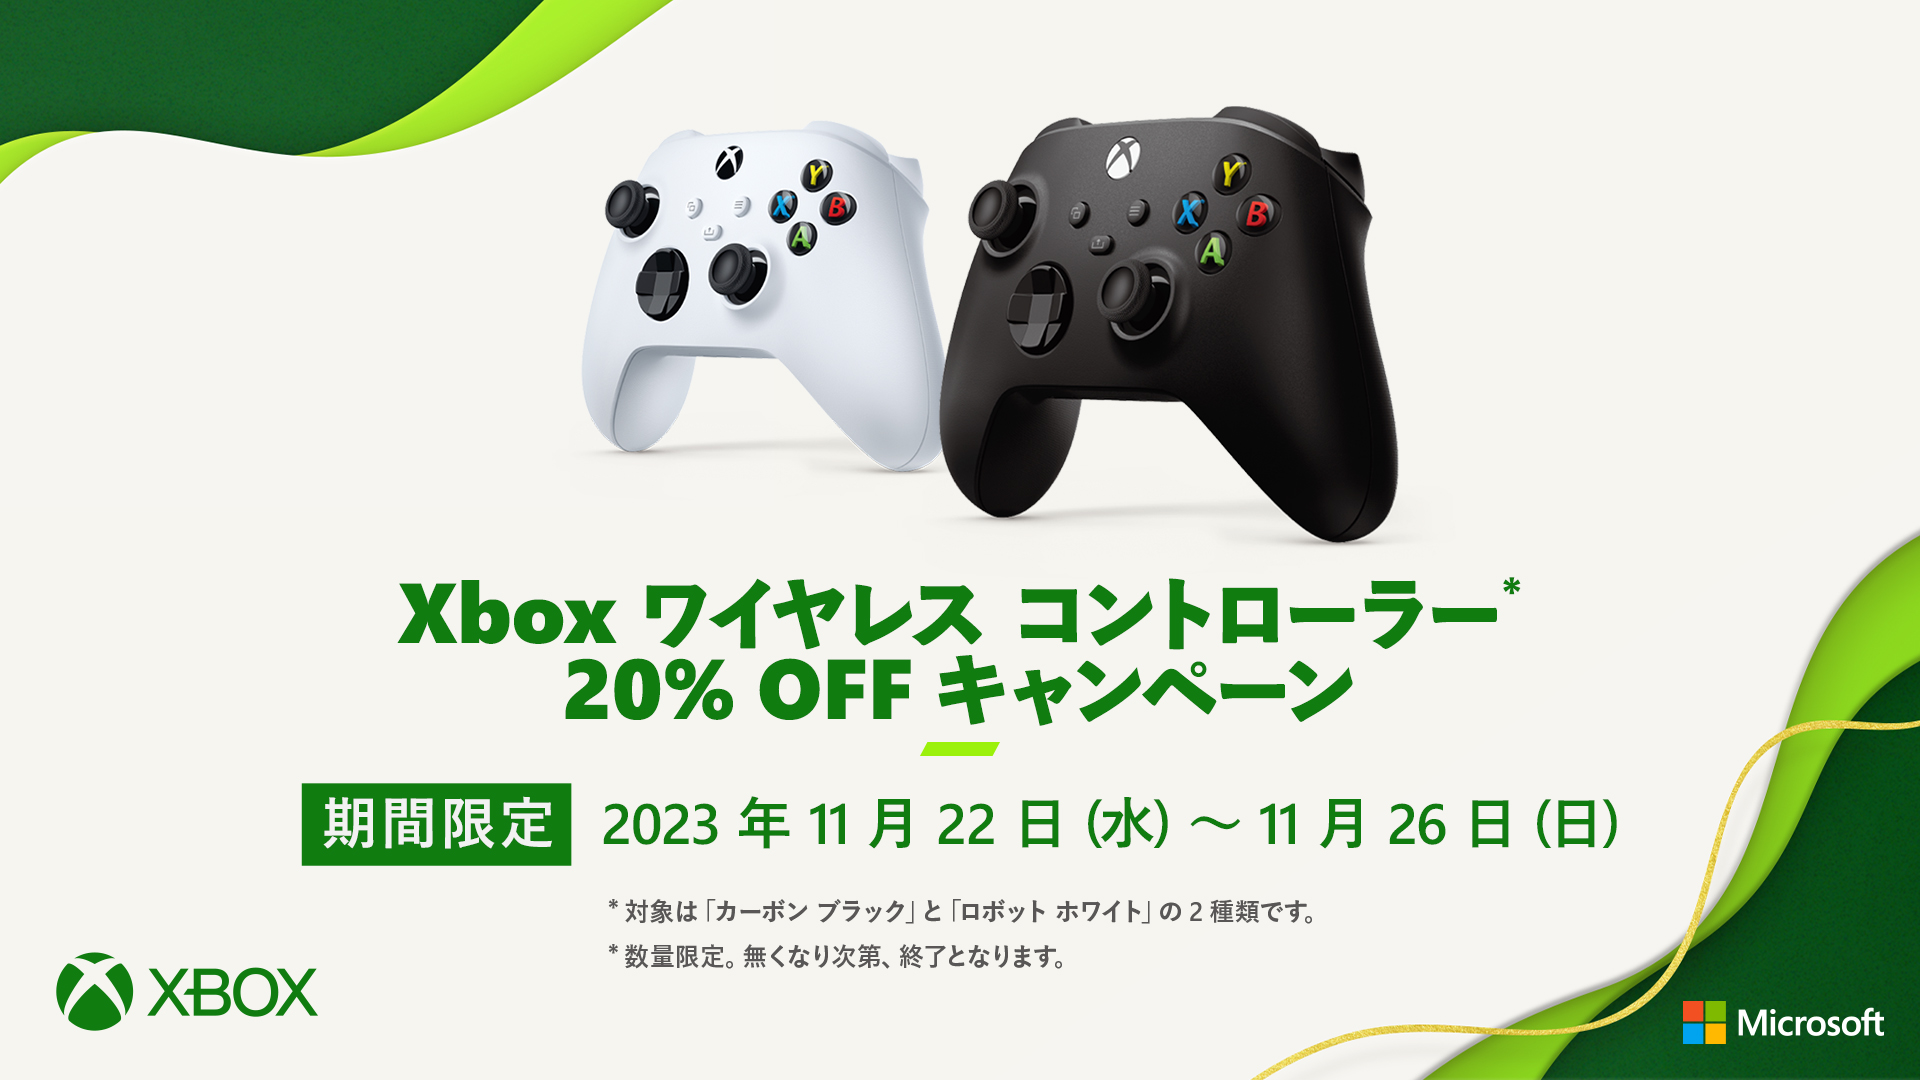 Xbox ワイヤレスコントローラー 20%OFFキャンペーン」が11月22日より